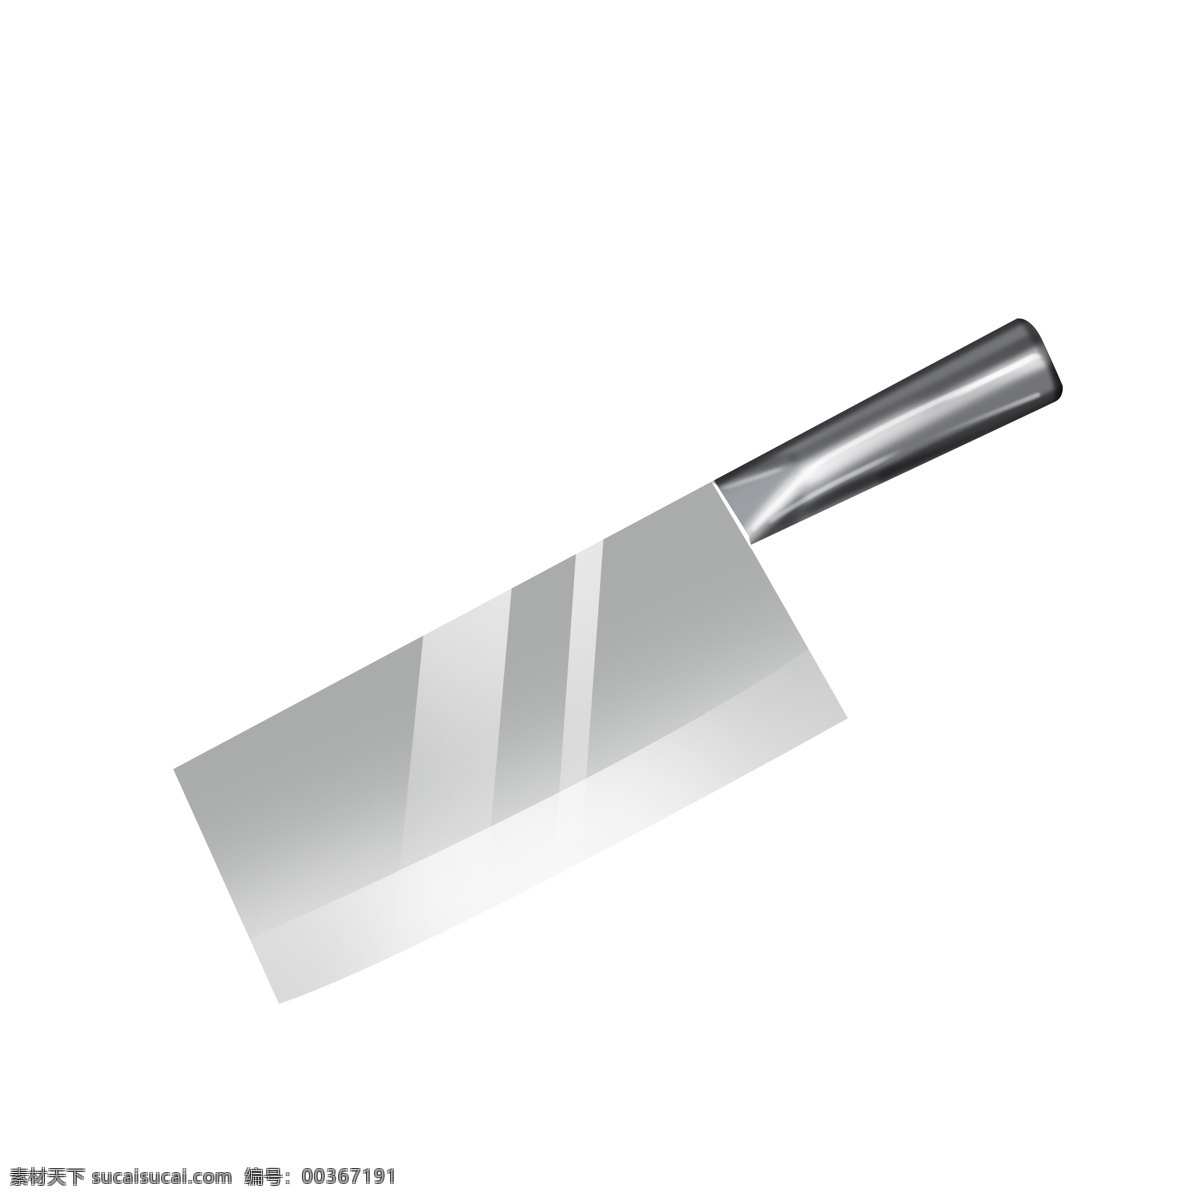 银灰色 家用 菜刀 透明 底 银色 灰色 插画 锋利 锋利的刀 插画插图 厨具